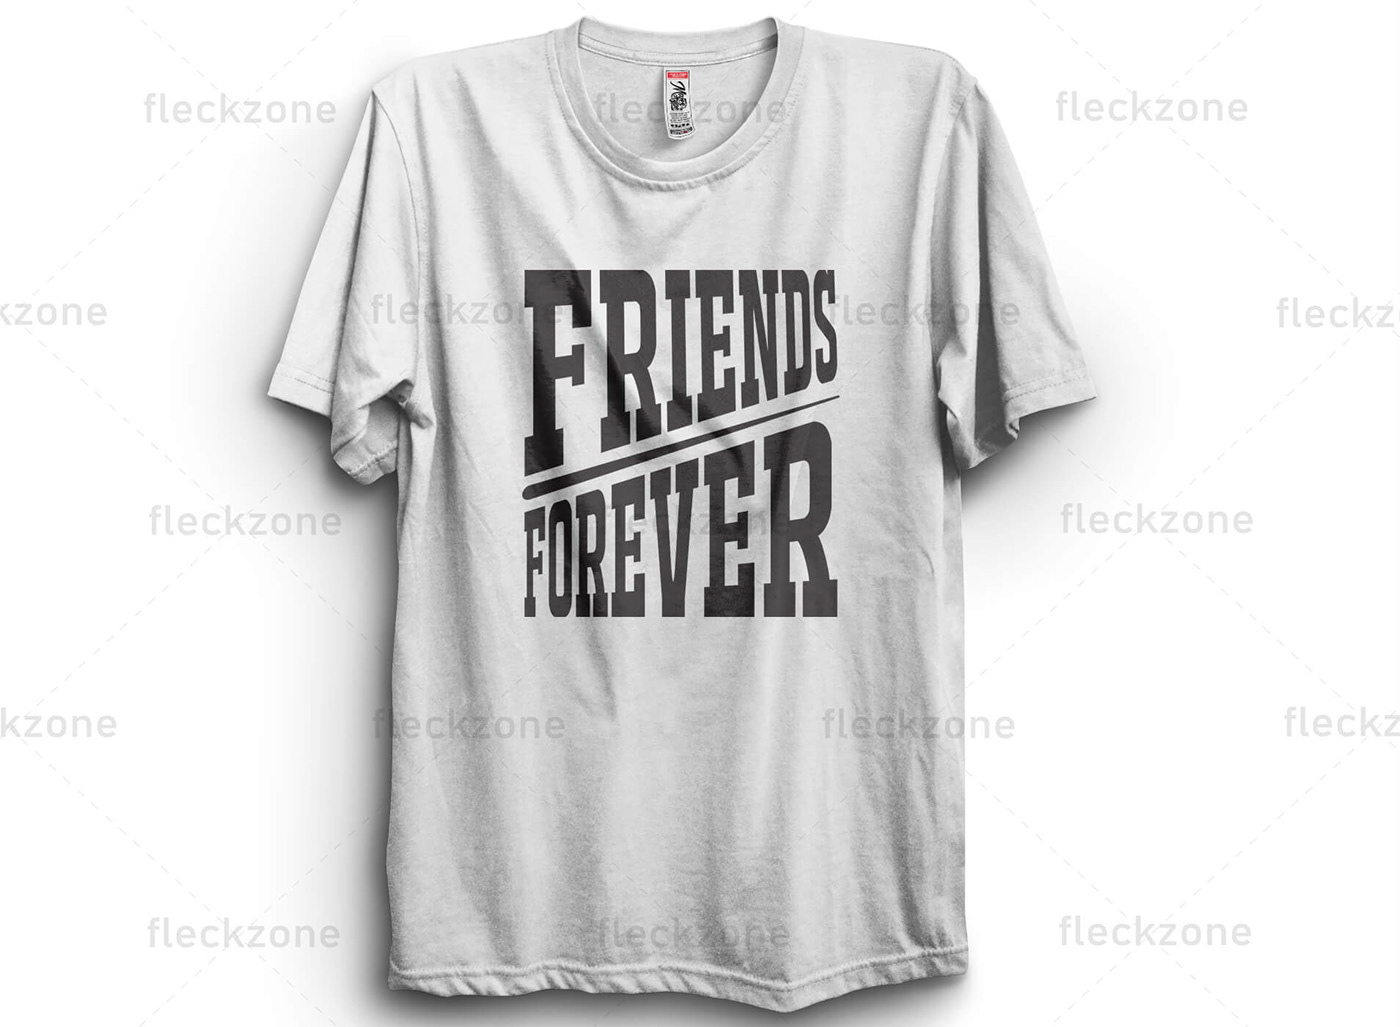 t-shirt tee graphic design tshirt friend friendship Buddy best black